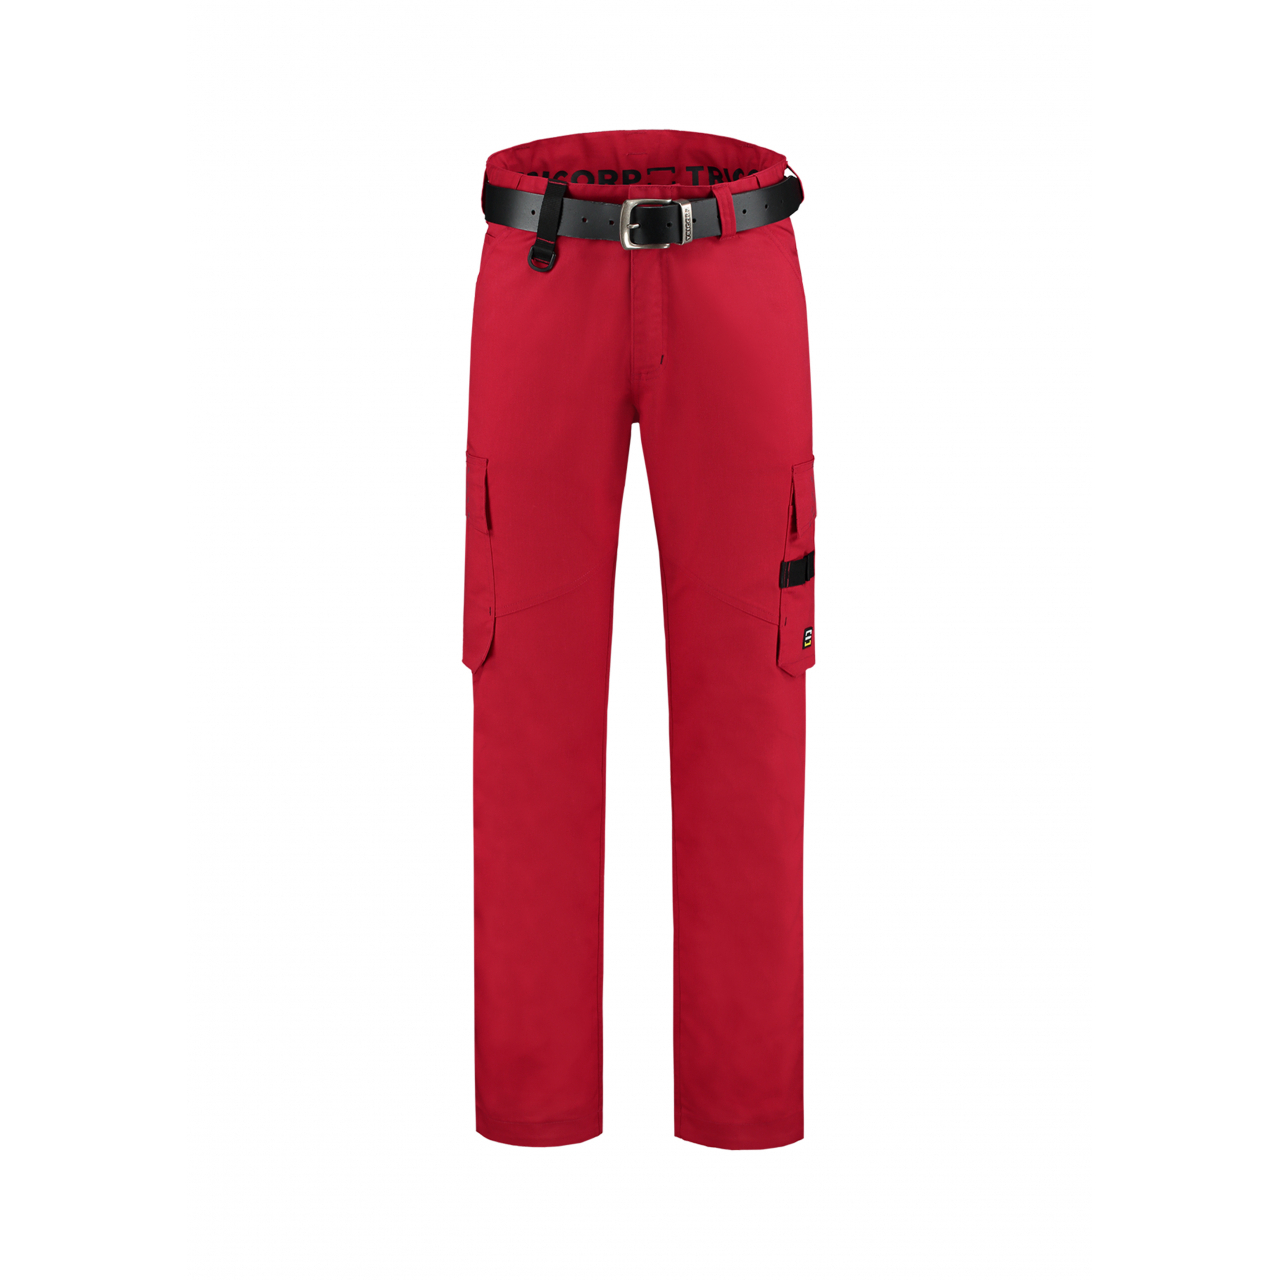 Pracovní kalhoty unisex Tricorp Work Pants Twill - červené, 48